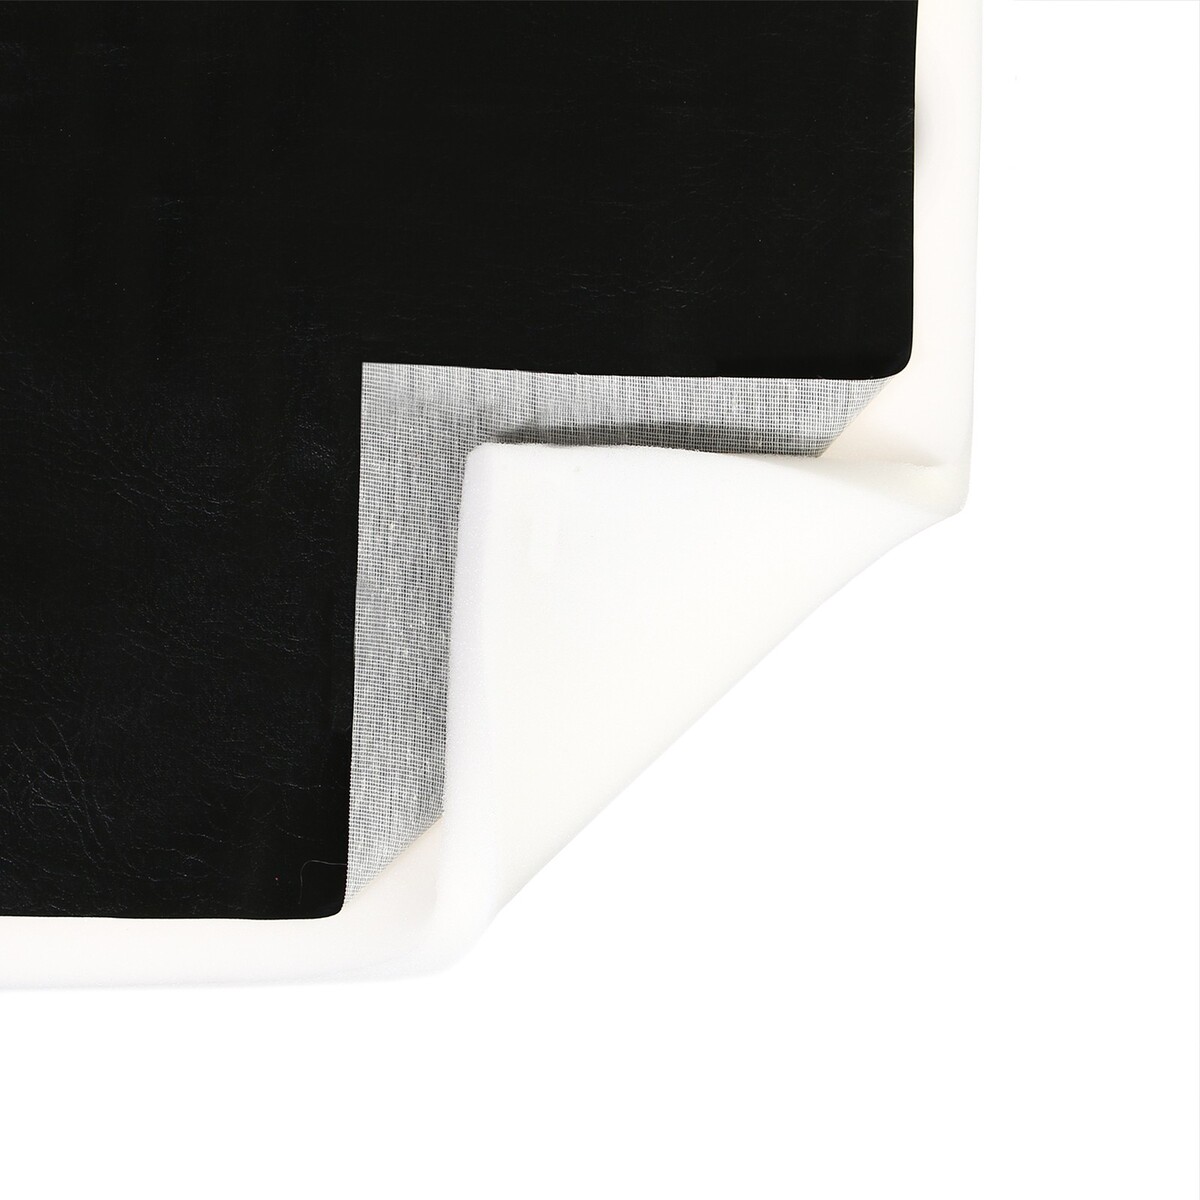 Комплект для перетяжки мебели, 50 × 100 см: иск.кожа, поролон 20 мм, черный комплект для перетяжки мебели 50 × 50 см иск кожа поролон 20 мм чёрный